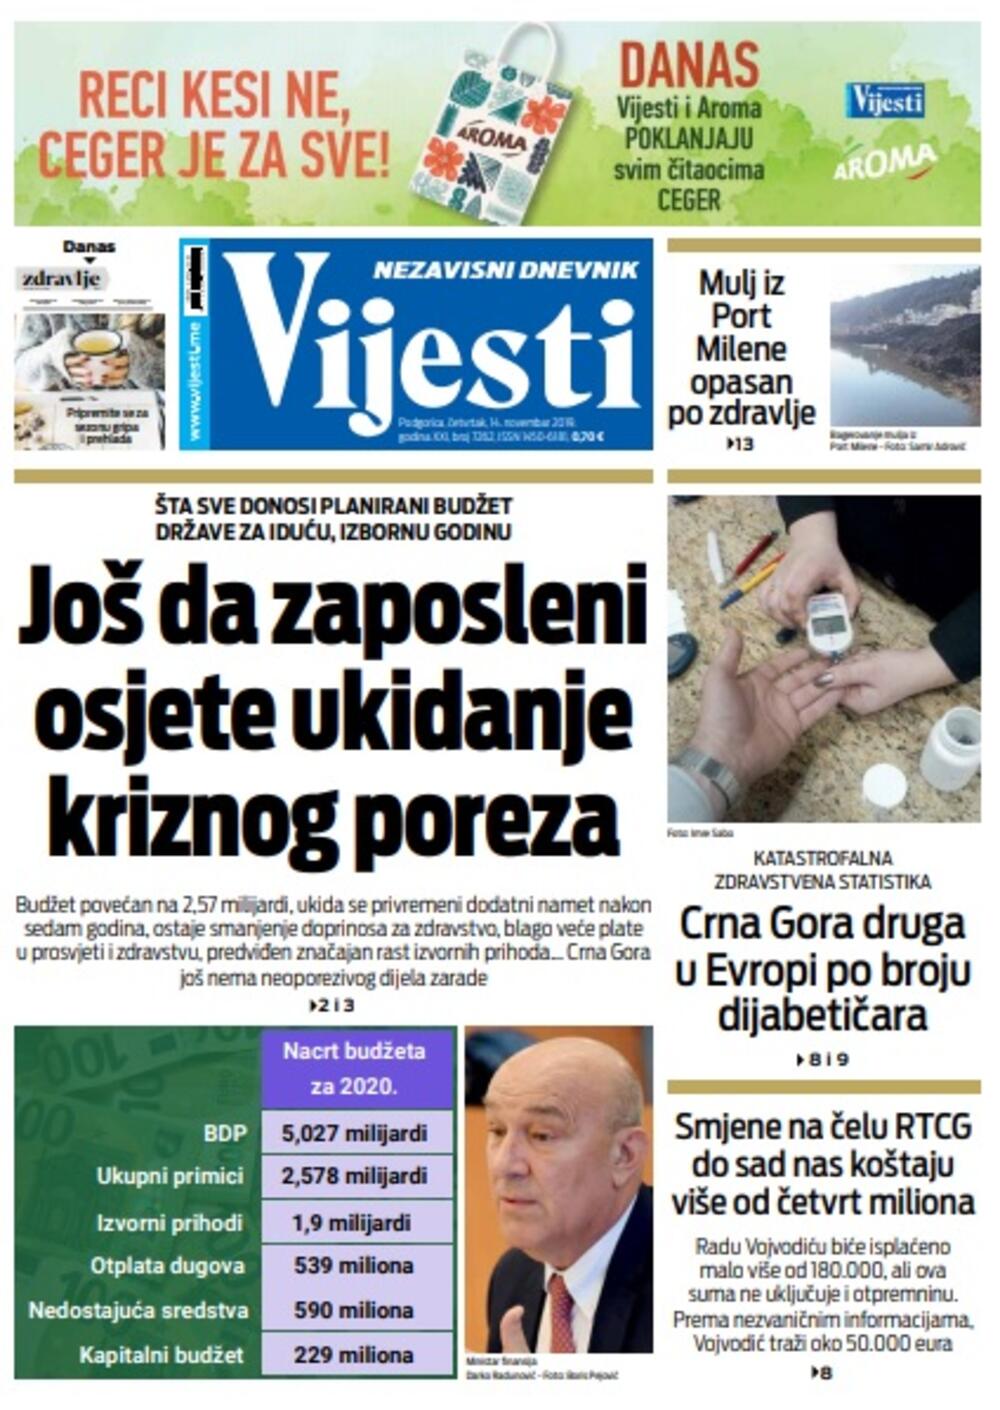 Naslovna strana "Vijesti" za 14. novembar 2019., Foto: "Vijesti"